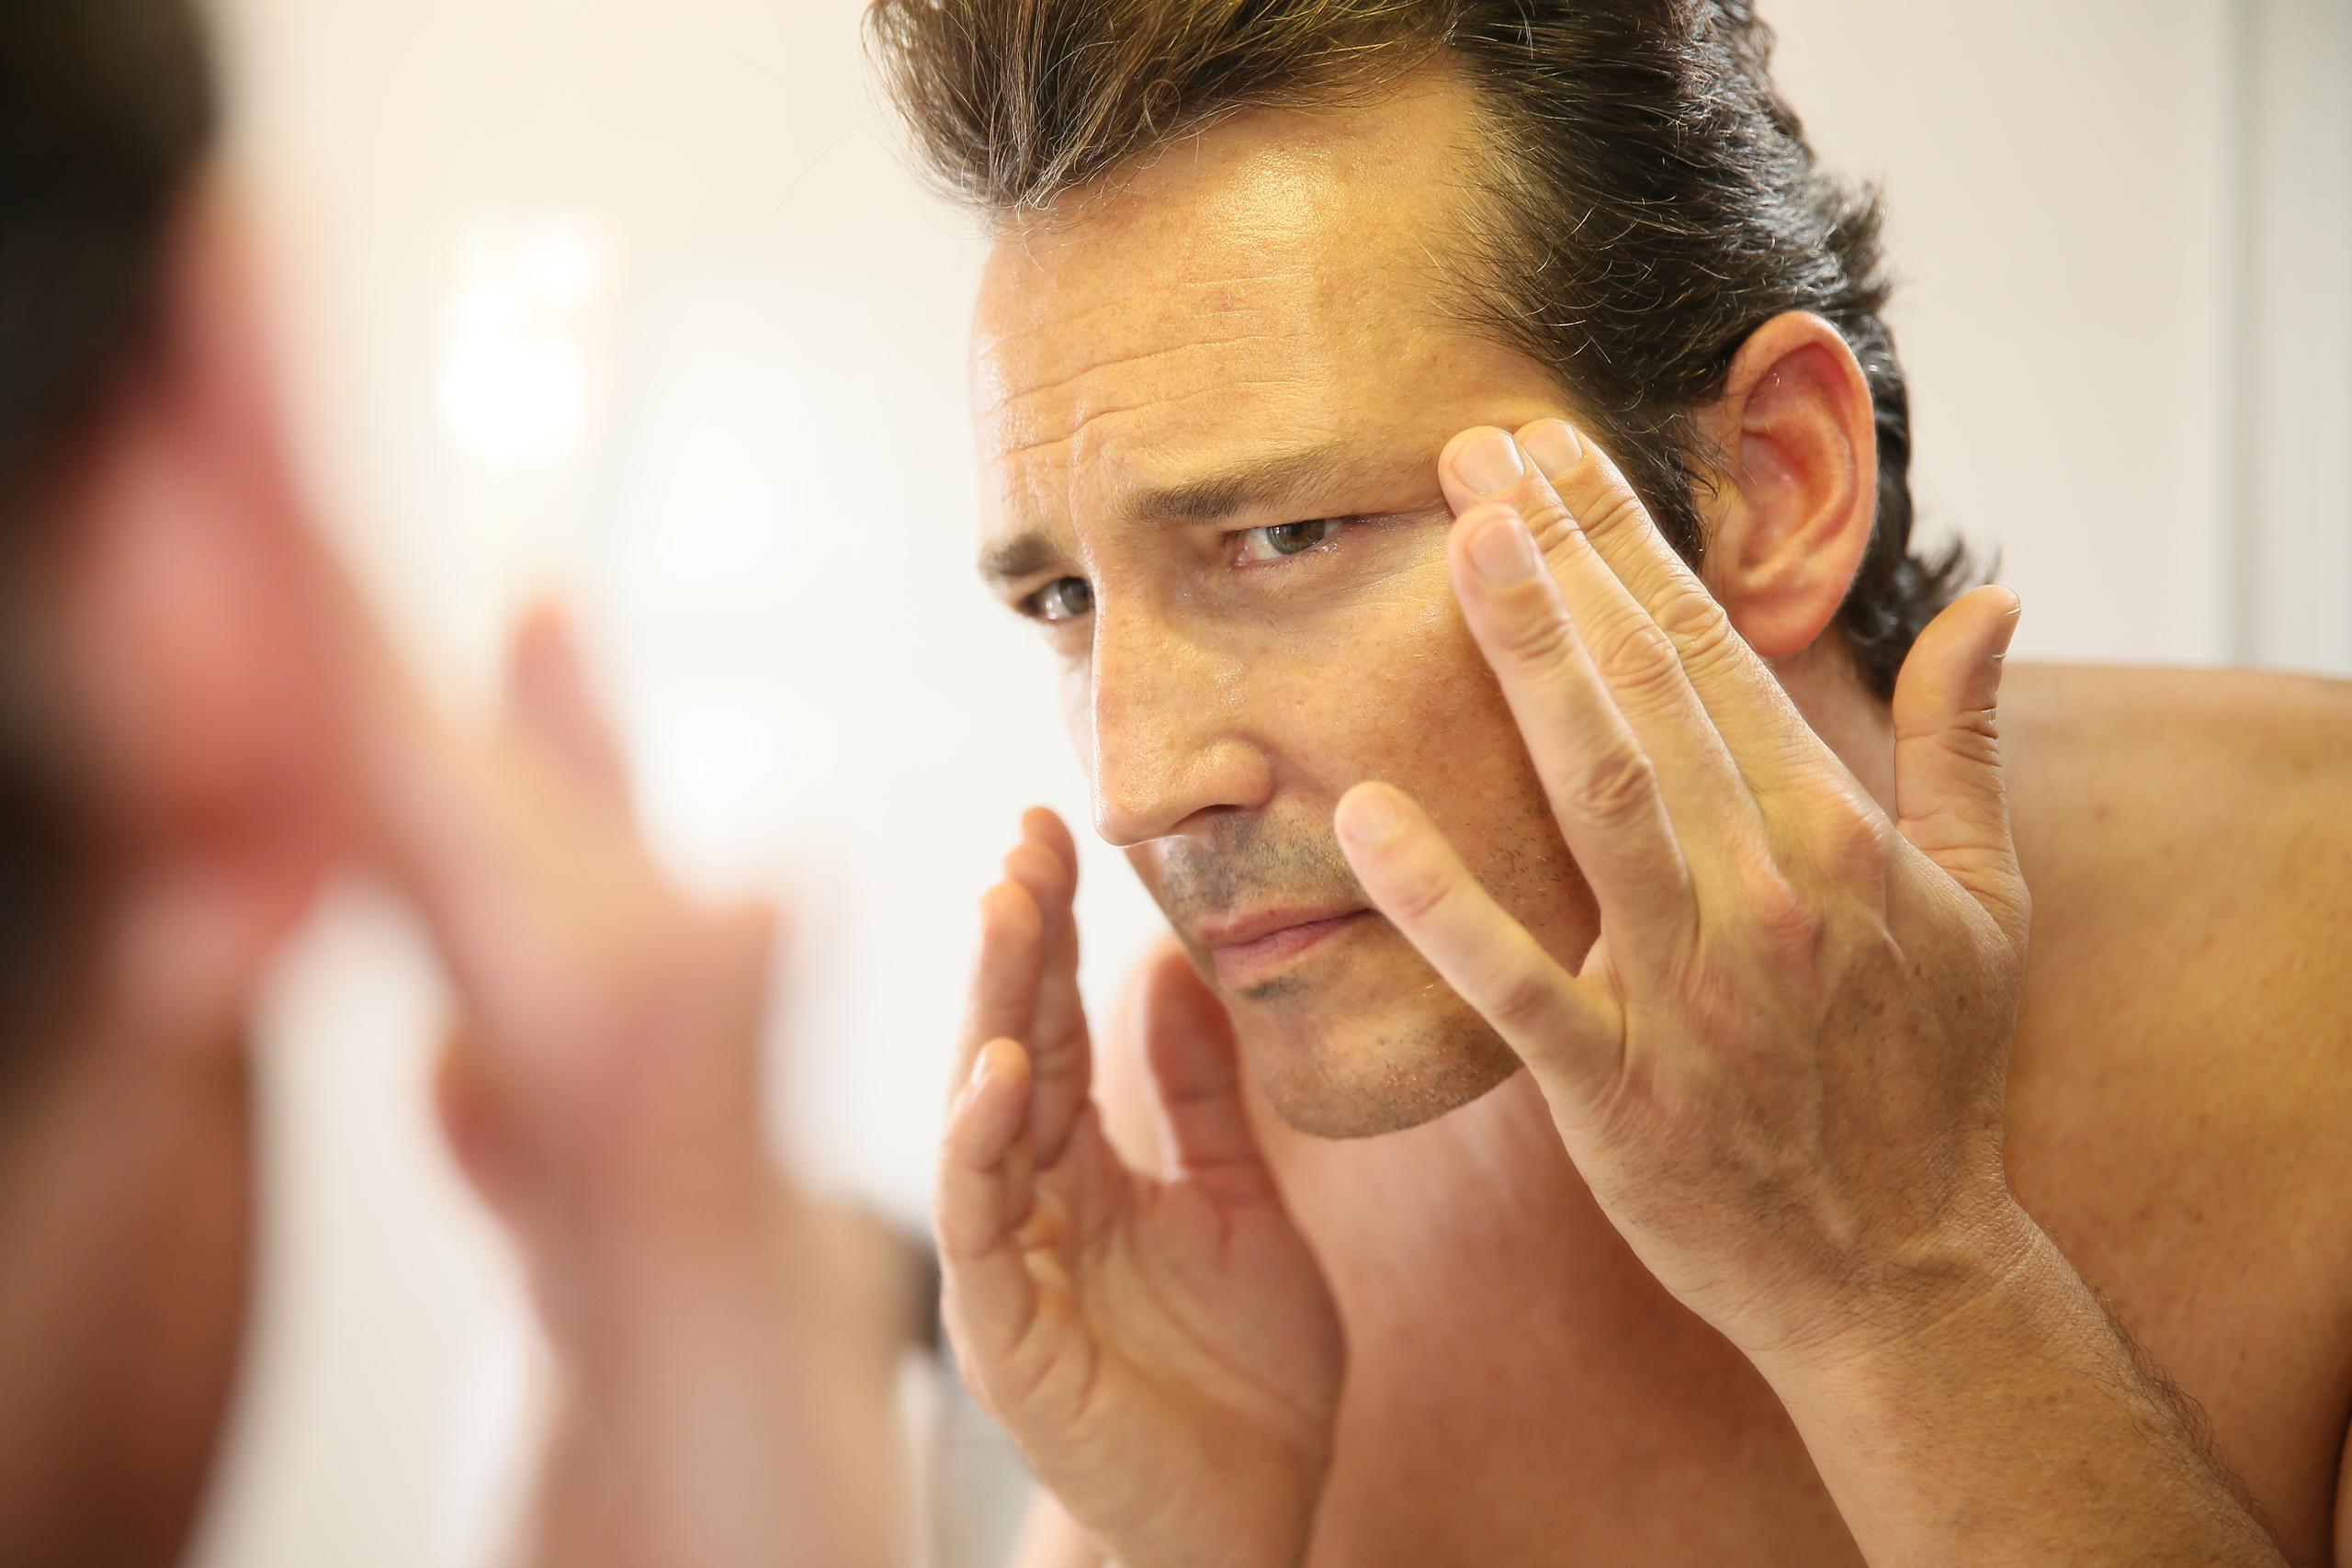 Se recomienda aplicar en la mañana y noche una crema facial hidratante, adecuada para tu tipo de piel y evitar esa sensación de tirantez o sequedad. (Shutterstock)